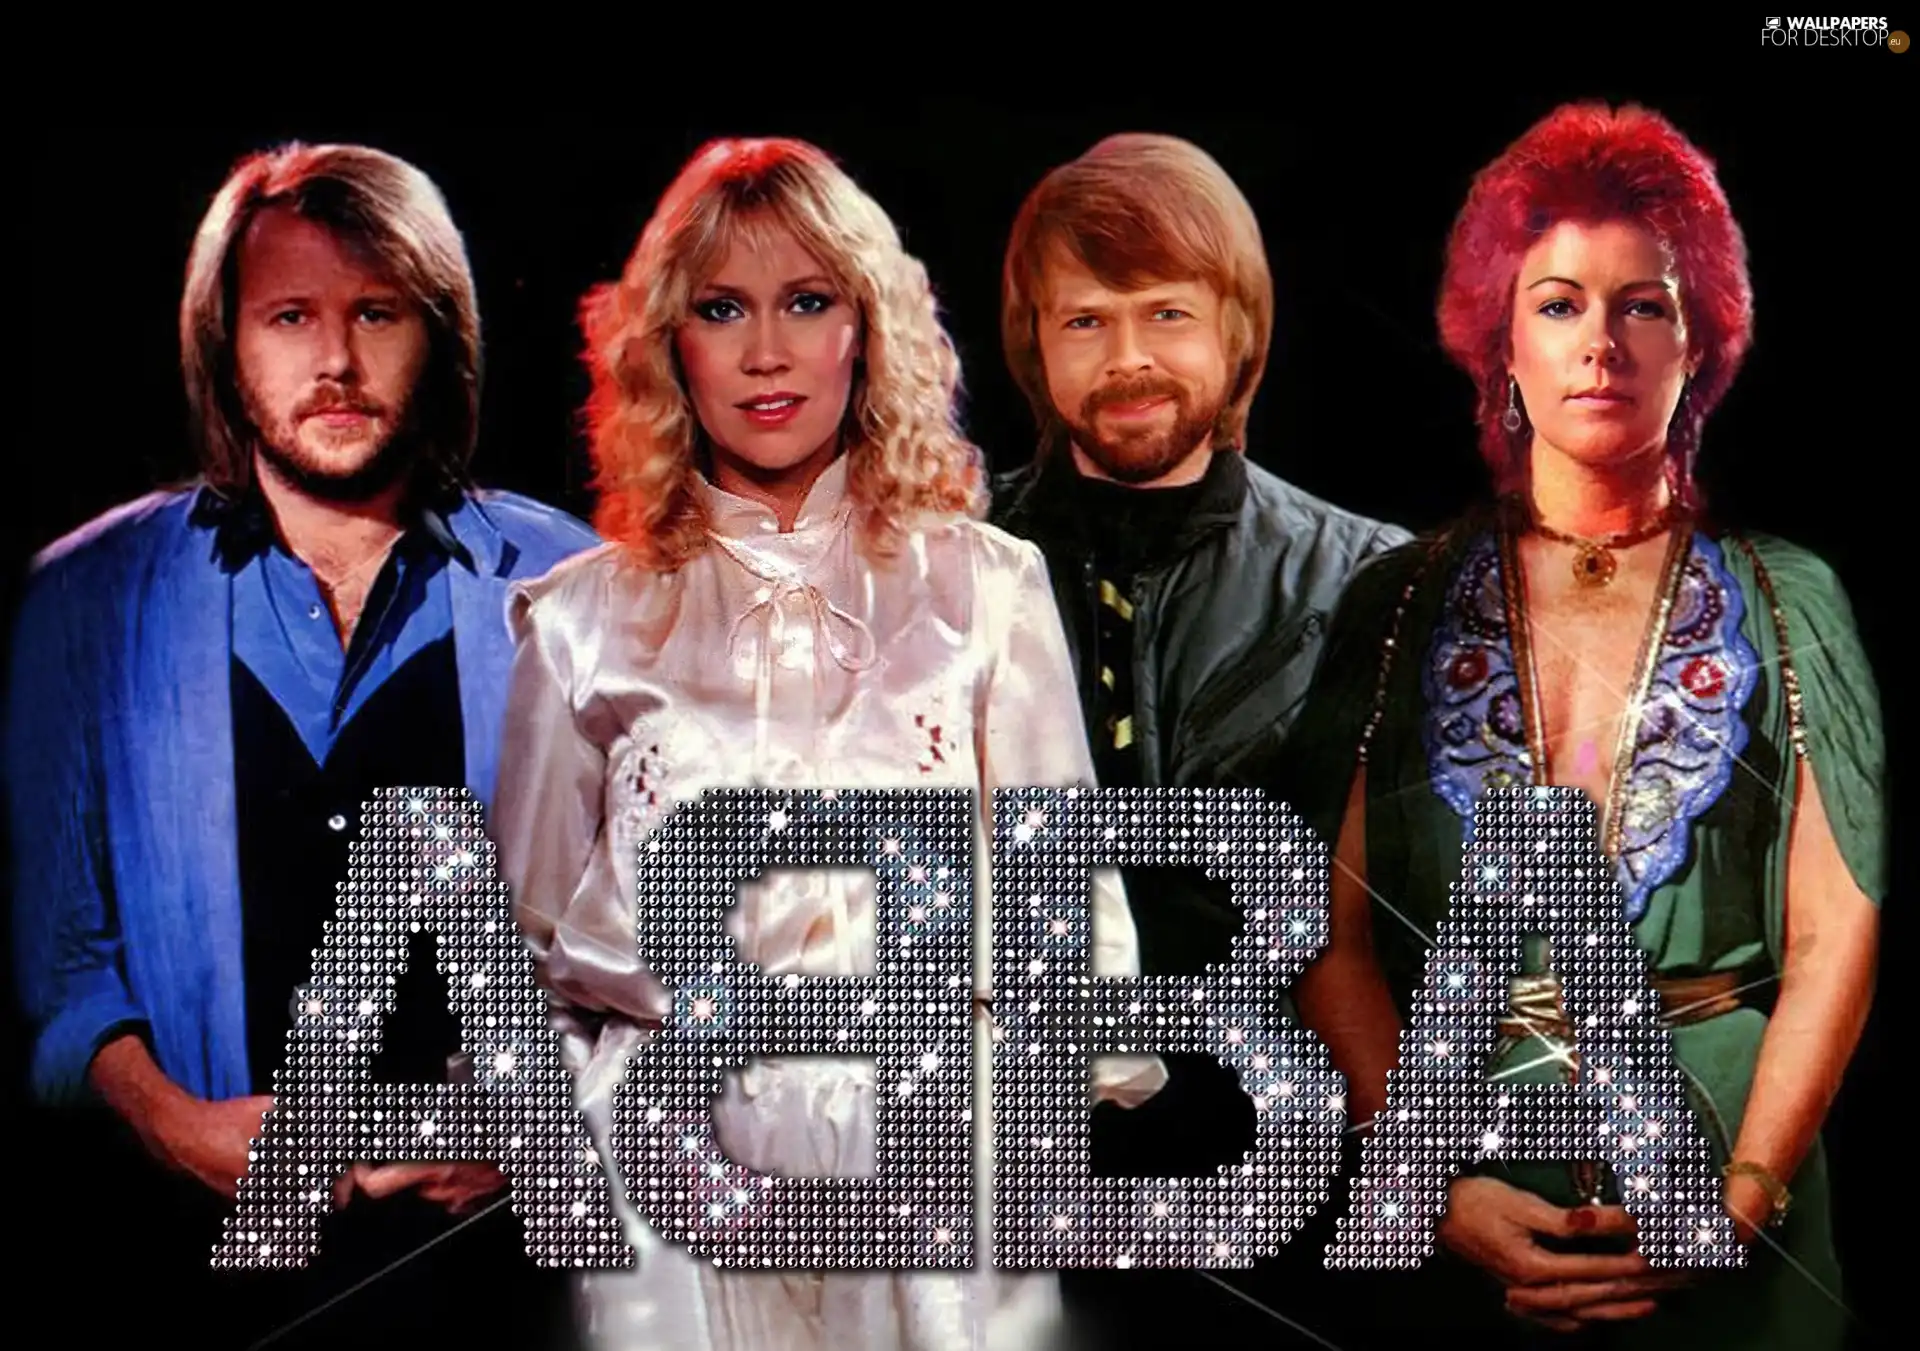 Team, ABBA